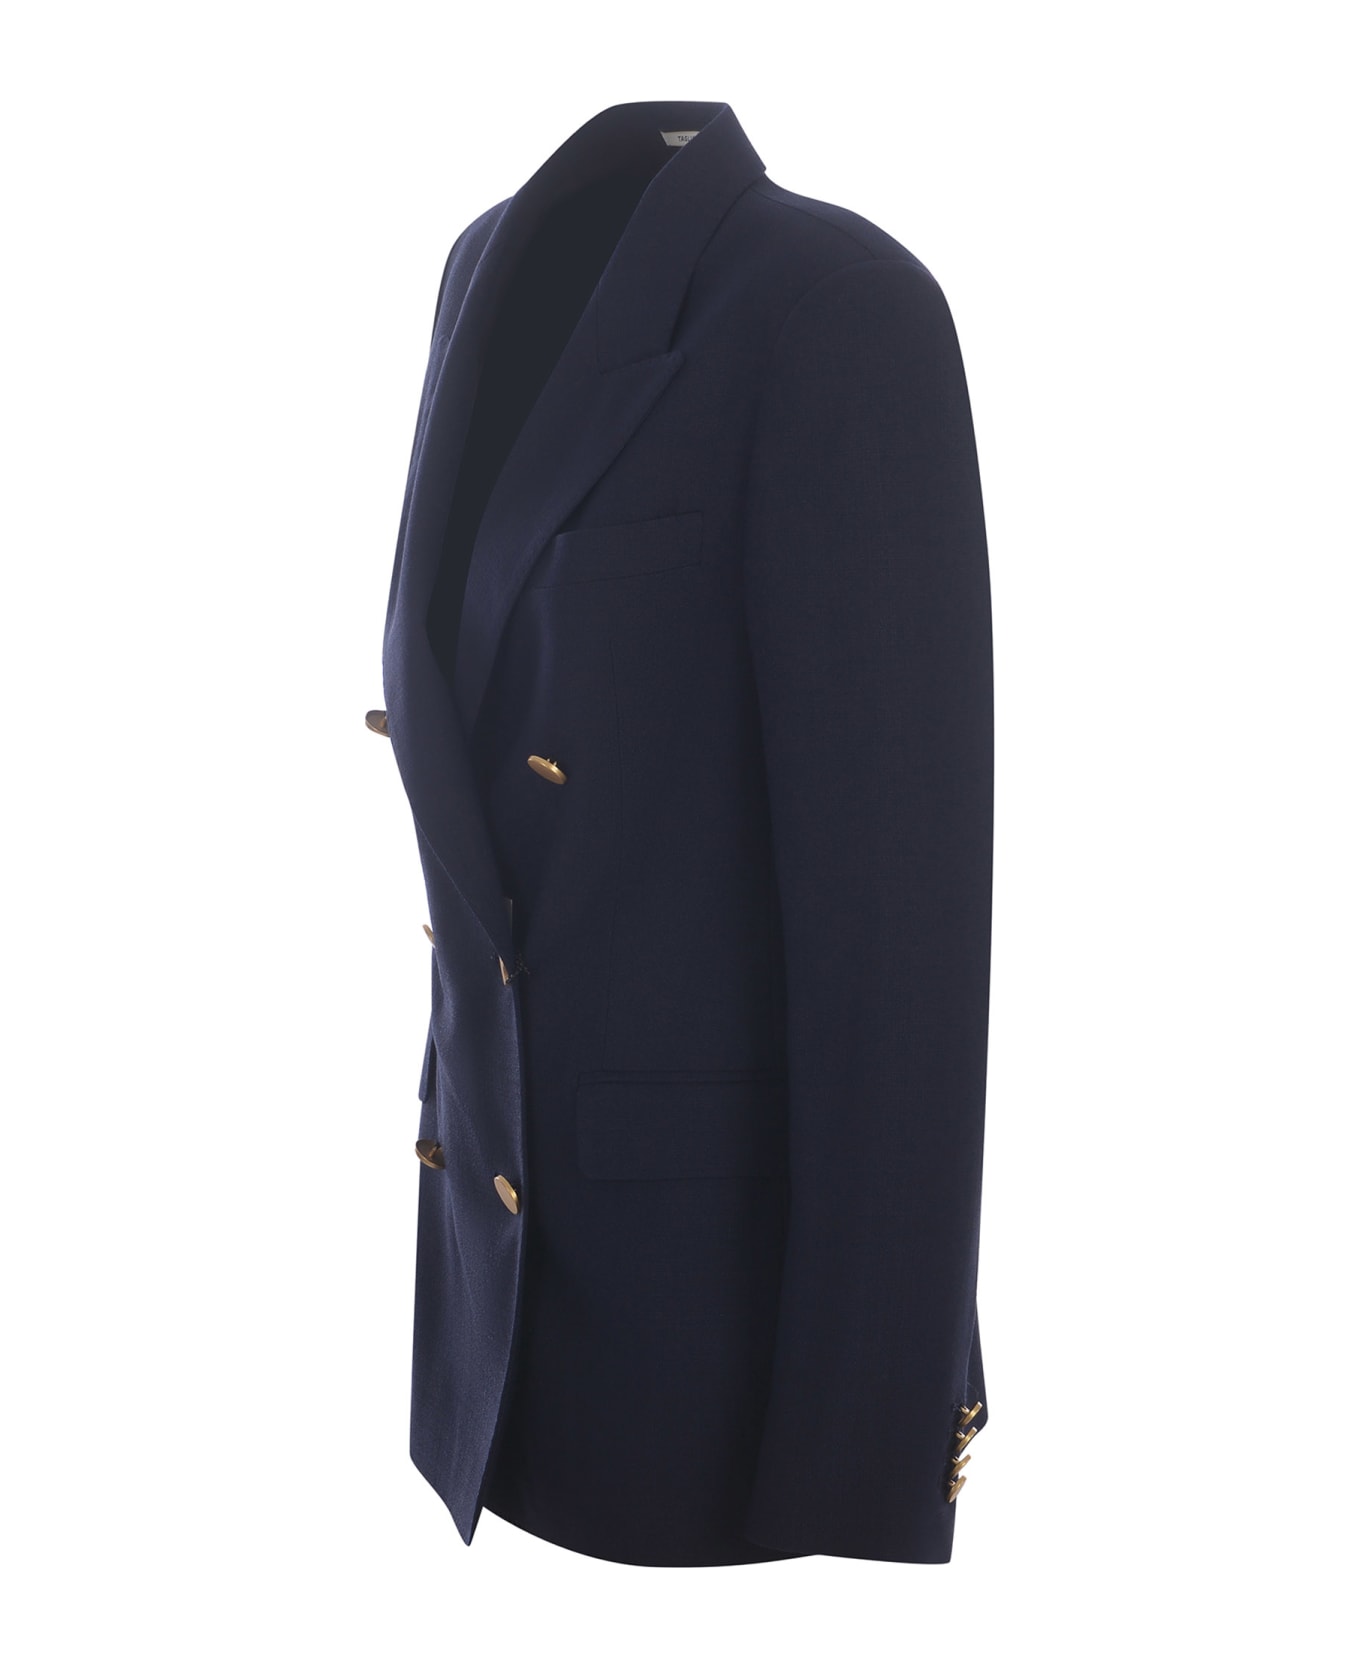 Tagliatore Double-breasted Jacket Tagliatore "j-parigi" Made Of Viscose Blend - Blu navy